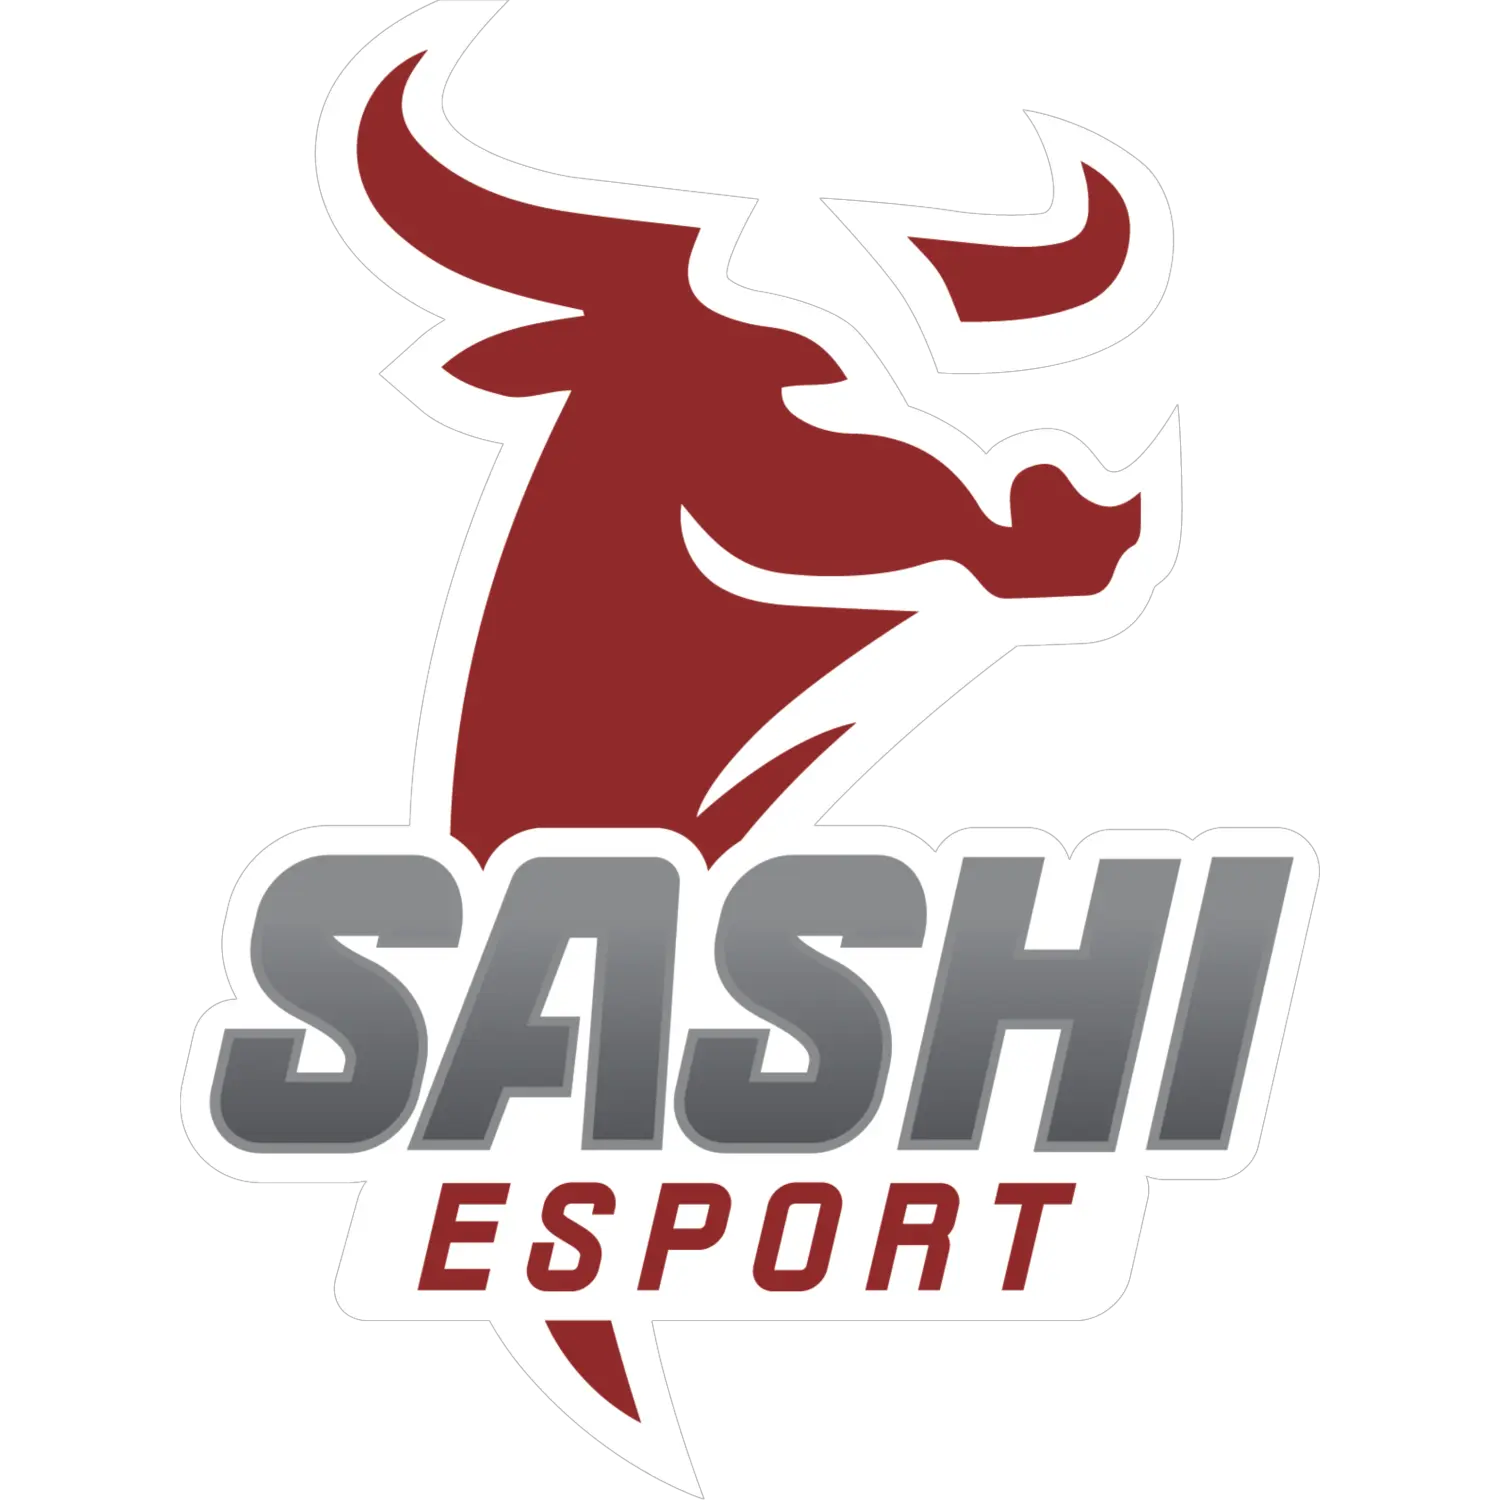 SASHI ESPORT logo